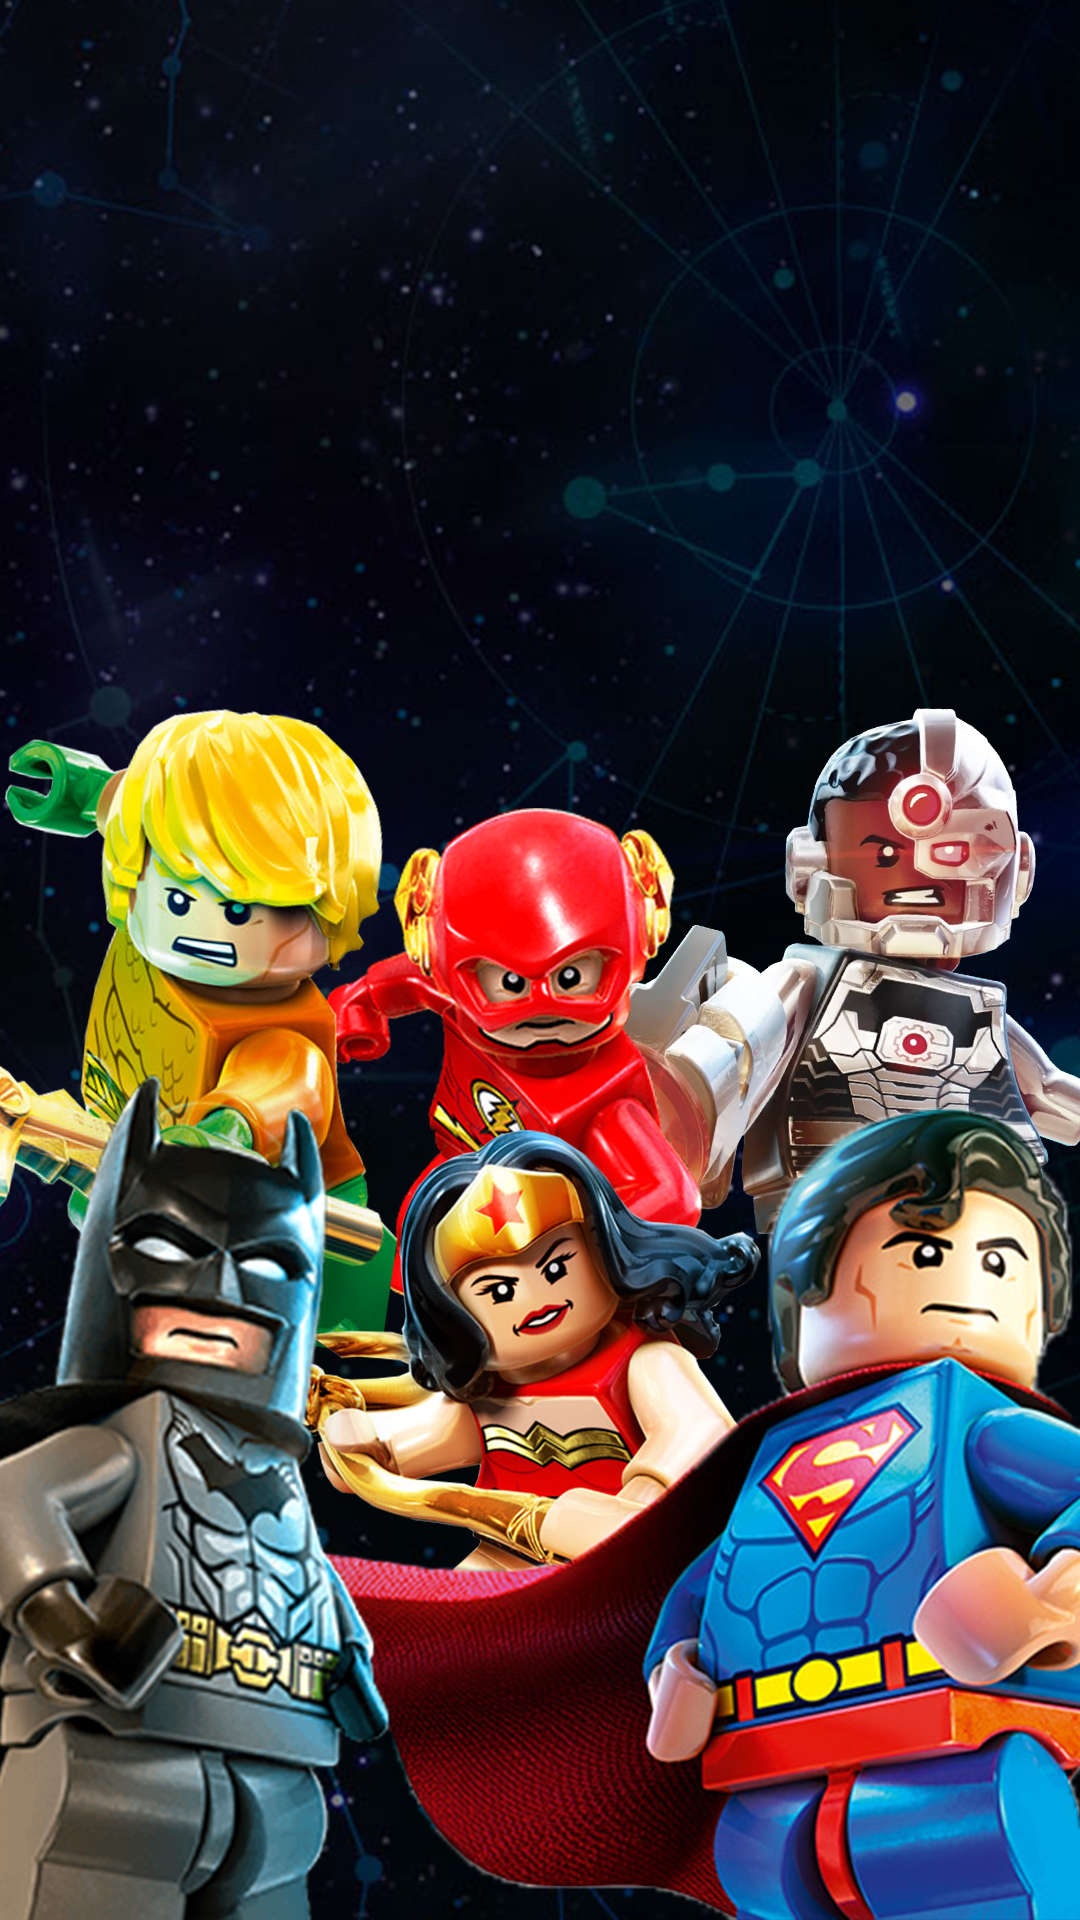 スーパーマンの壁紙,漫画,おもちゃ,ヒーロー,アクションフィギュア,レゴ